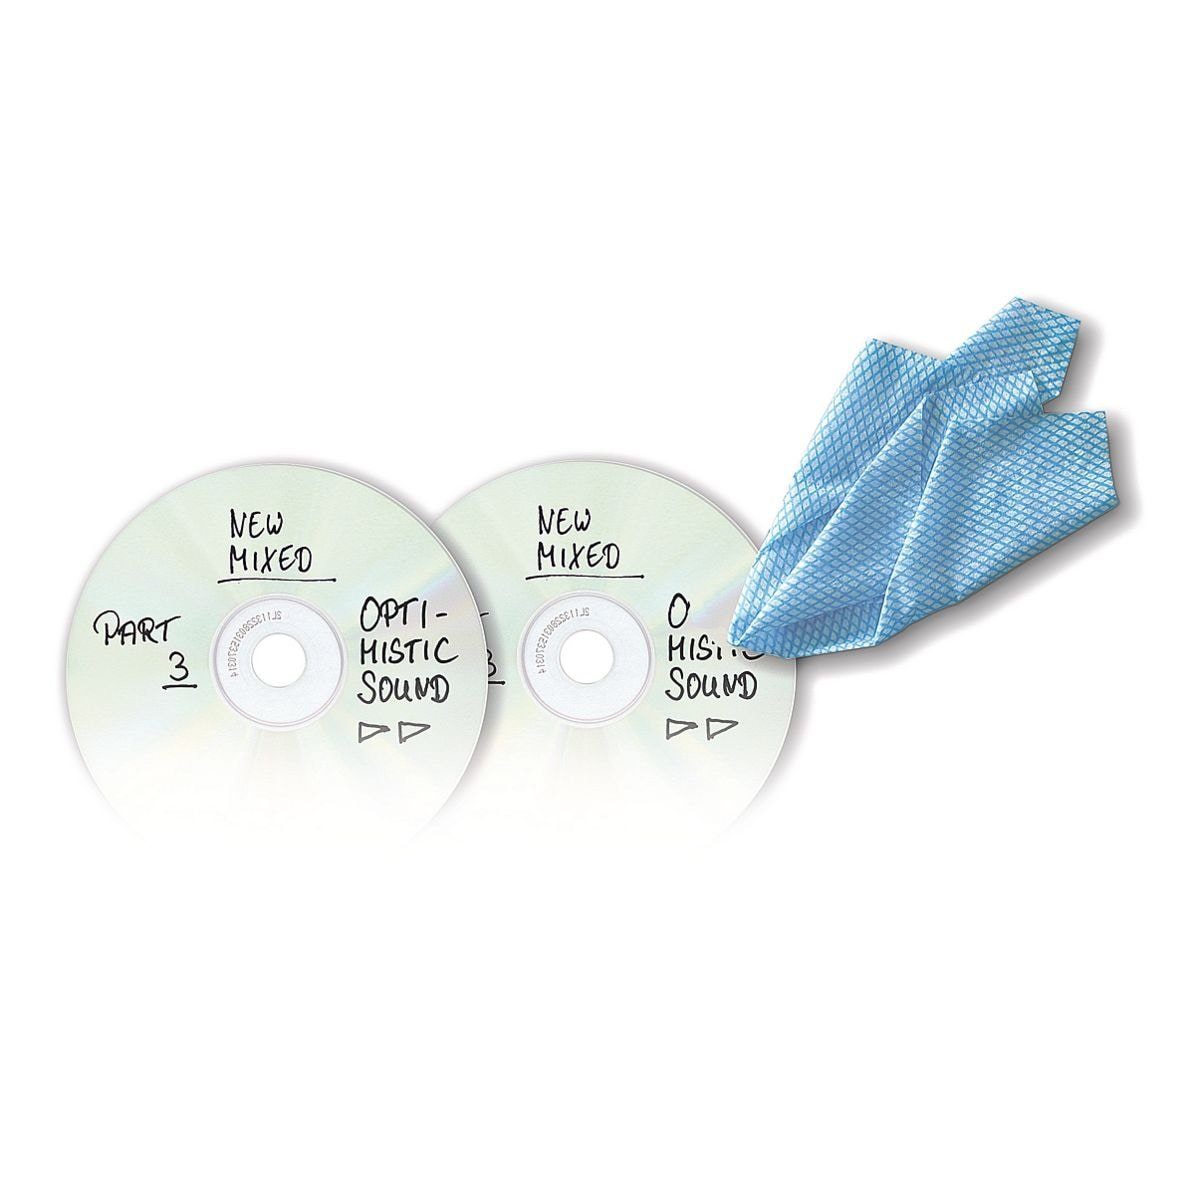 edding Marker (1-tlg), für 8500RW, non-permanent CDs/DVDs/BDs